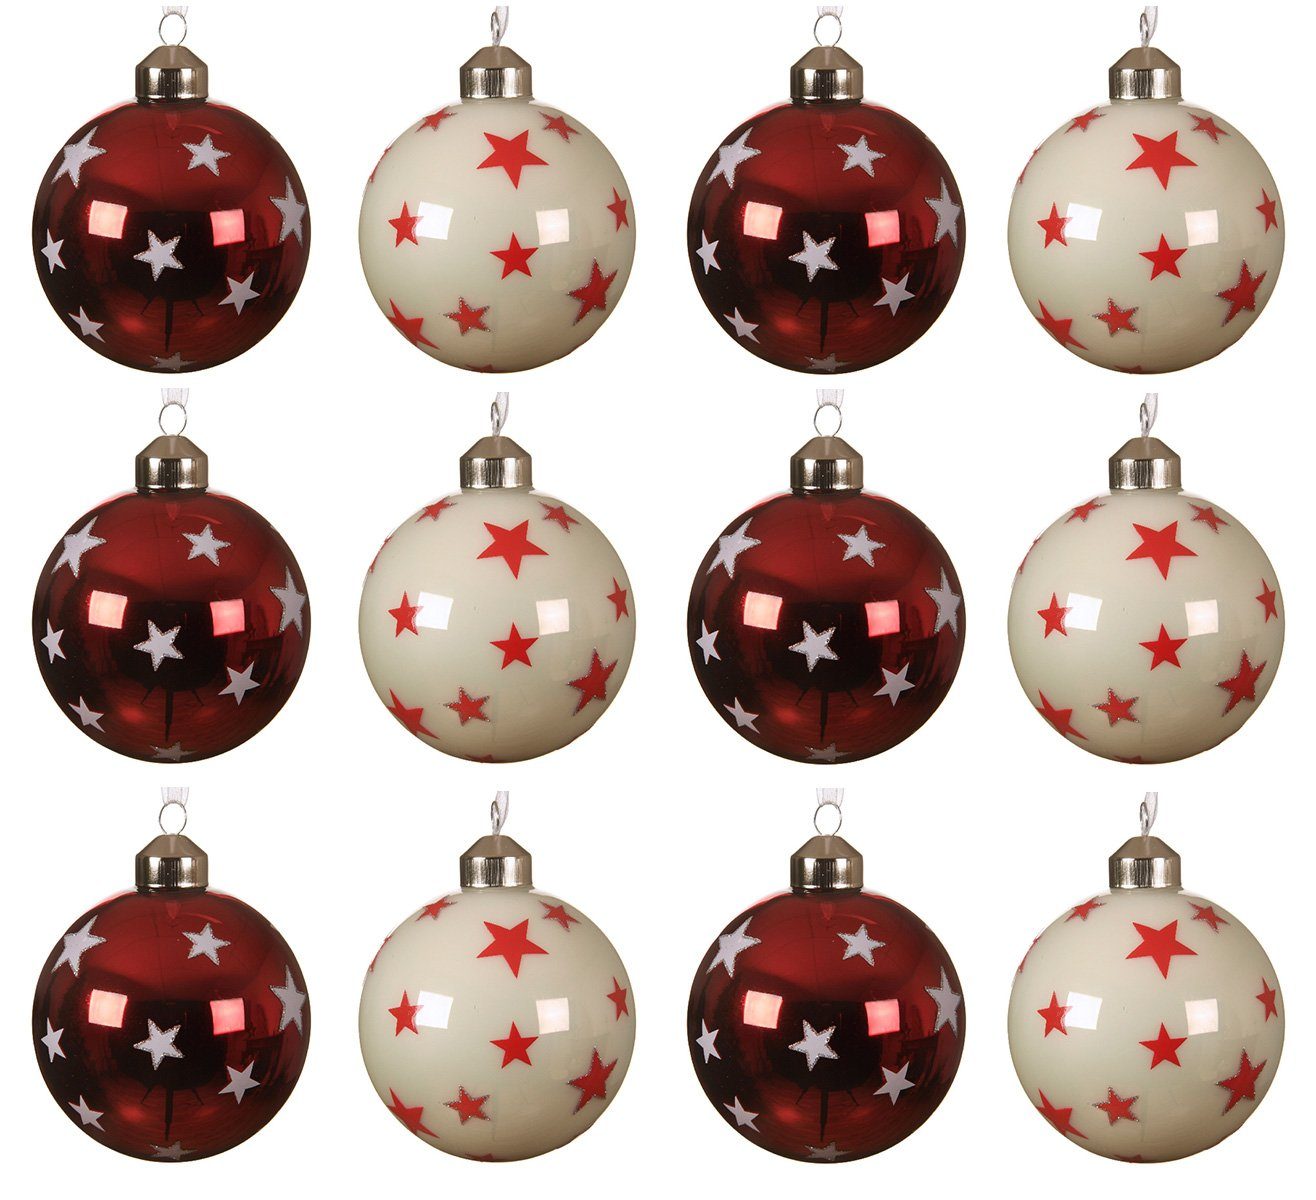 Decoris season decorations Weihnachtsbaumkugel, Weihnachtskugeln Glas 8cm mit Sternen Muster 12er Set rot / weiß